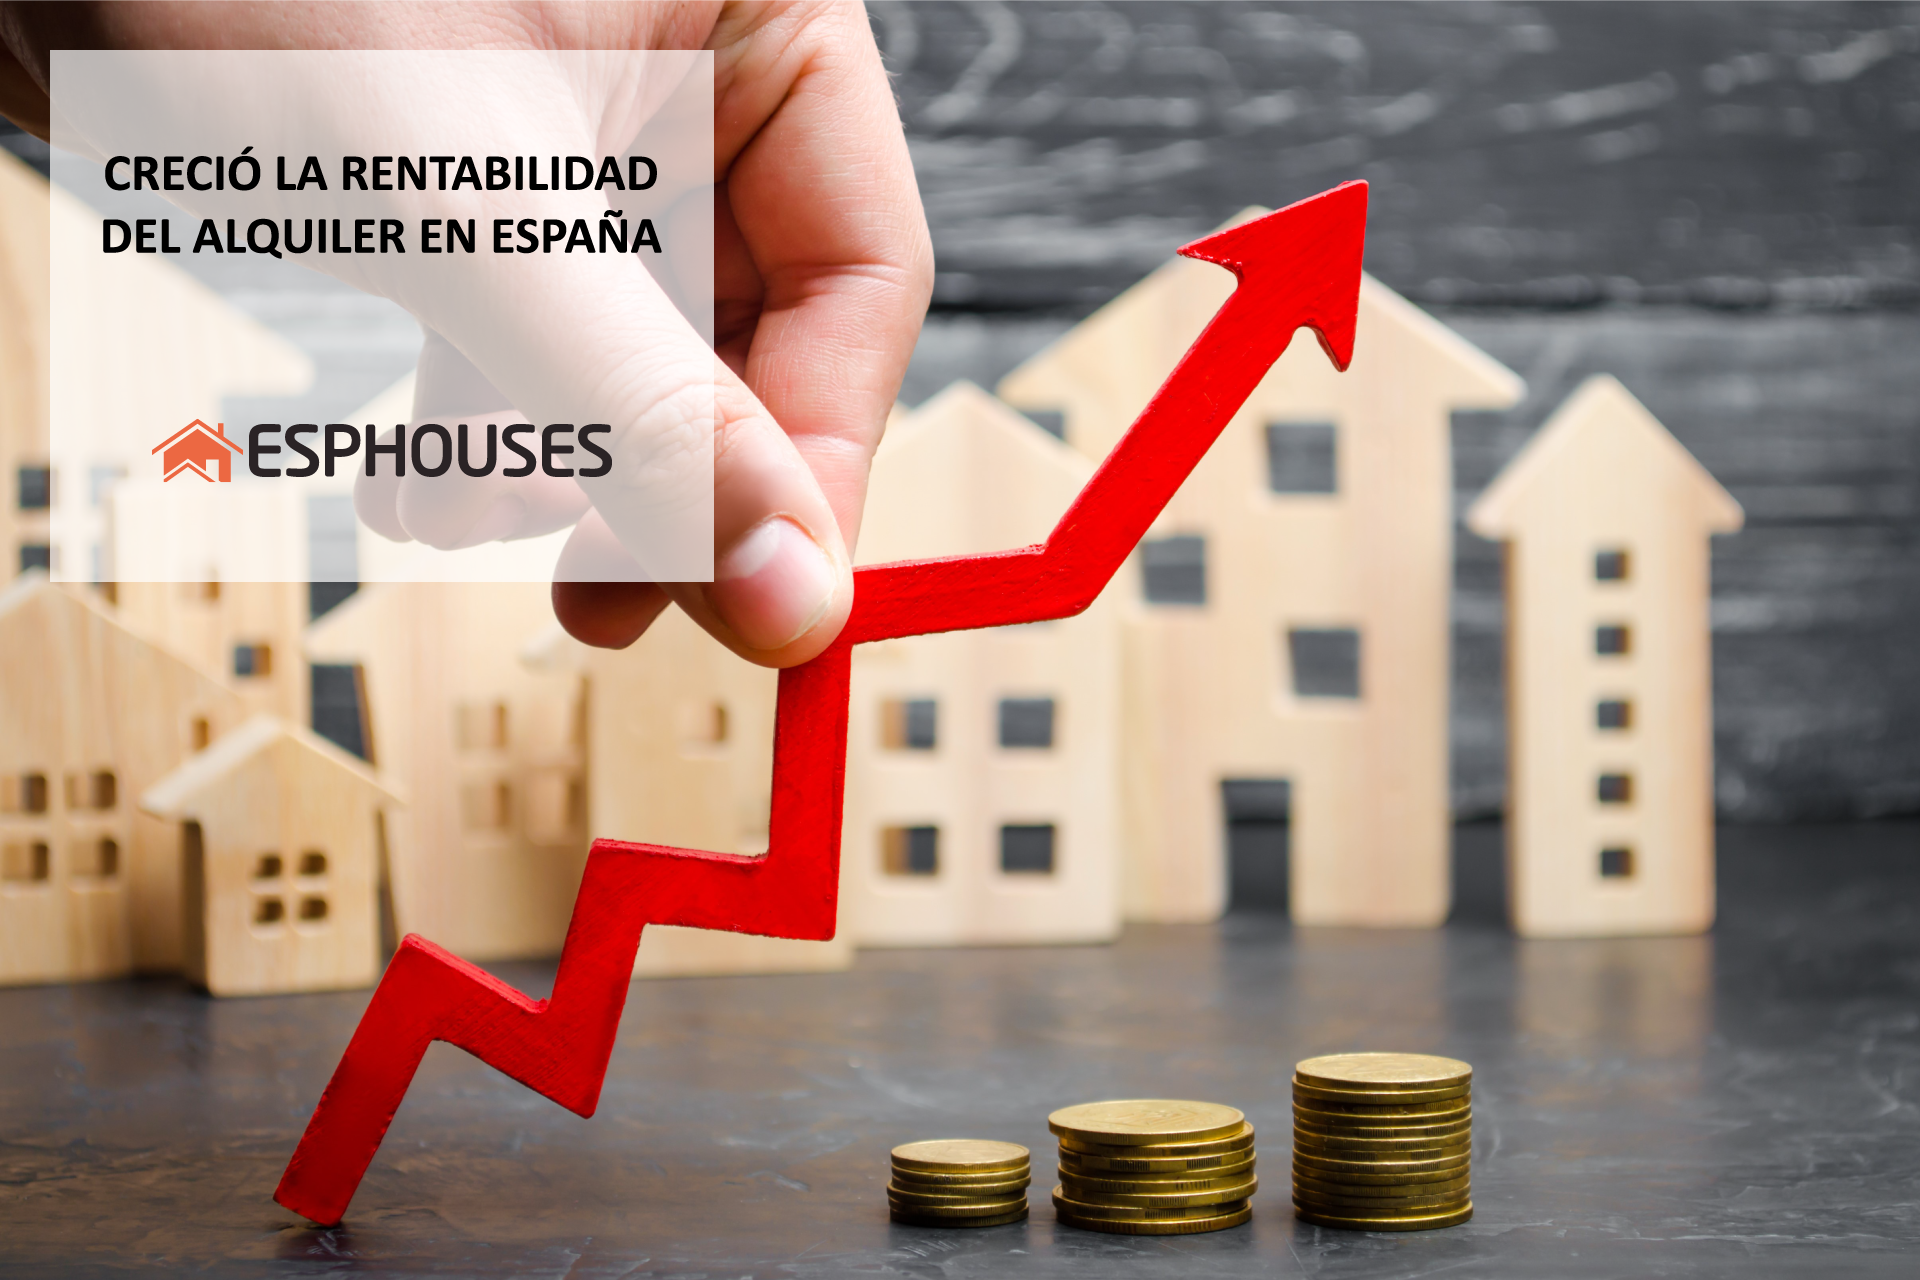 Creció la rentabilidad del alquiler en España durante el primer trimestre del año